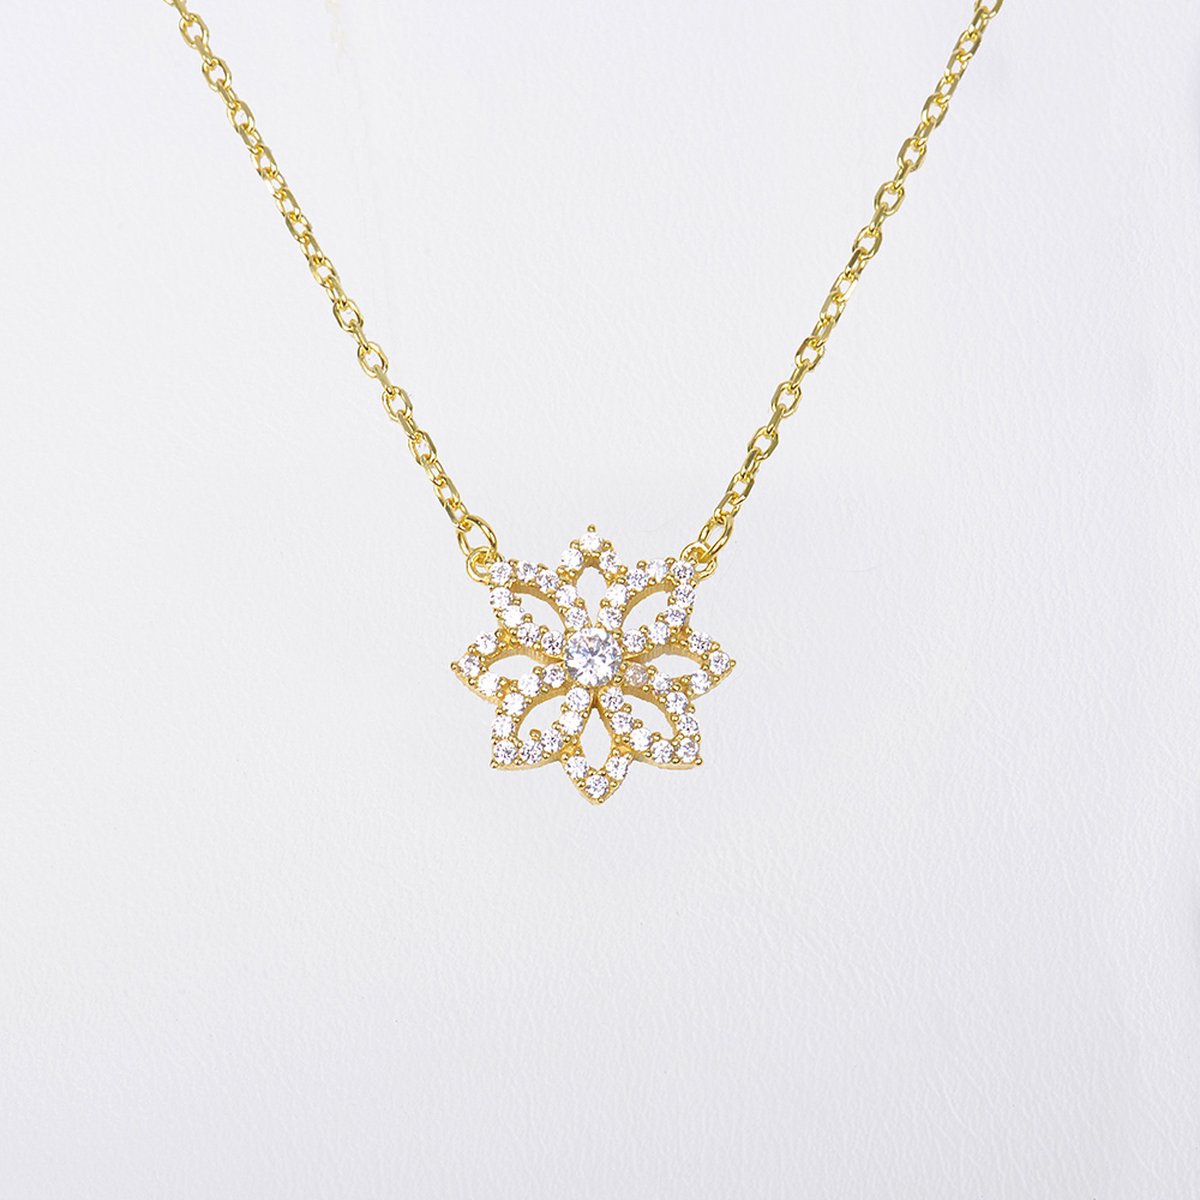 MeYuKu- Sieraden- 14 karaat gouden ketting- Lotus bloem